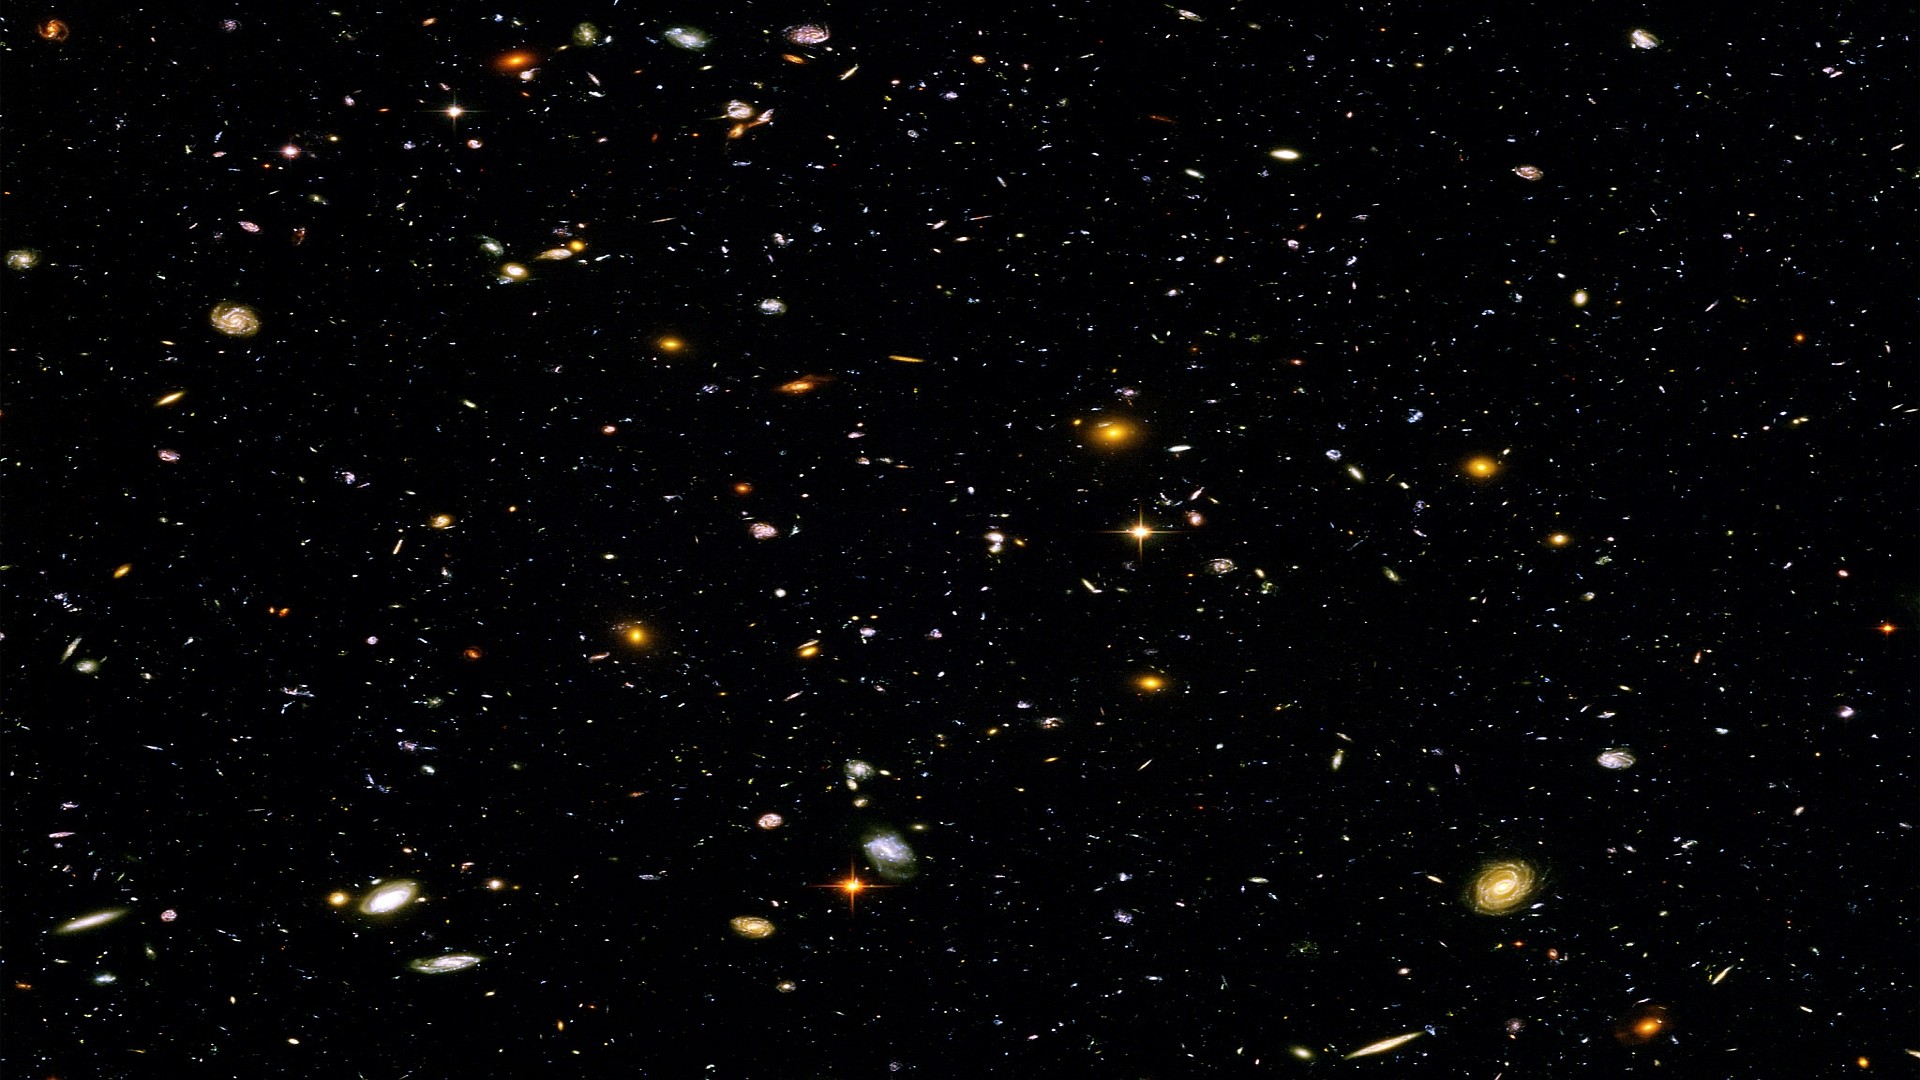 Hubble Desktop Wallpaper 1920 X 1080 – Pics about space